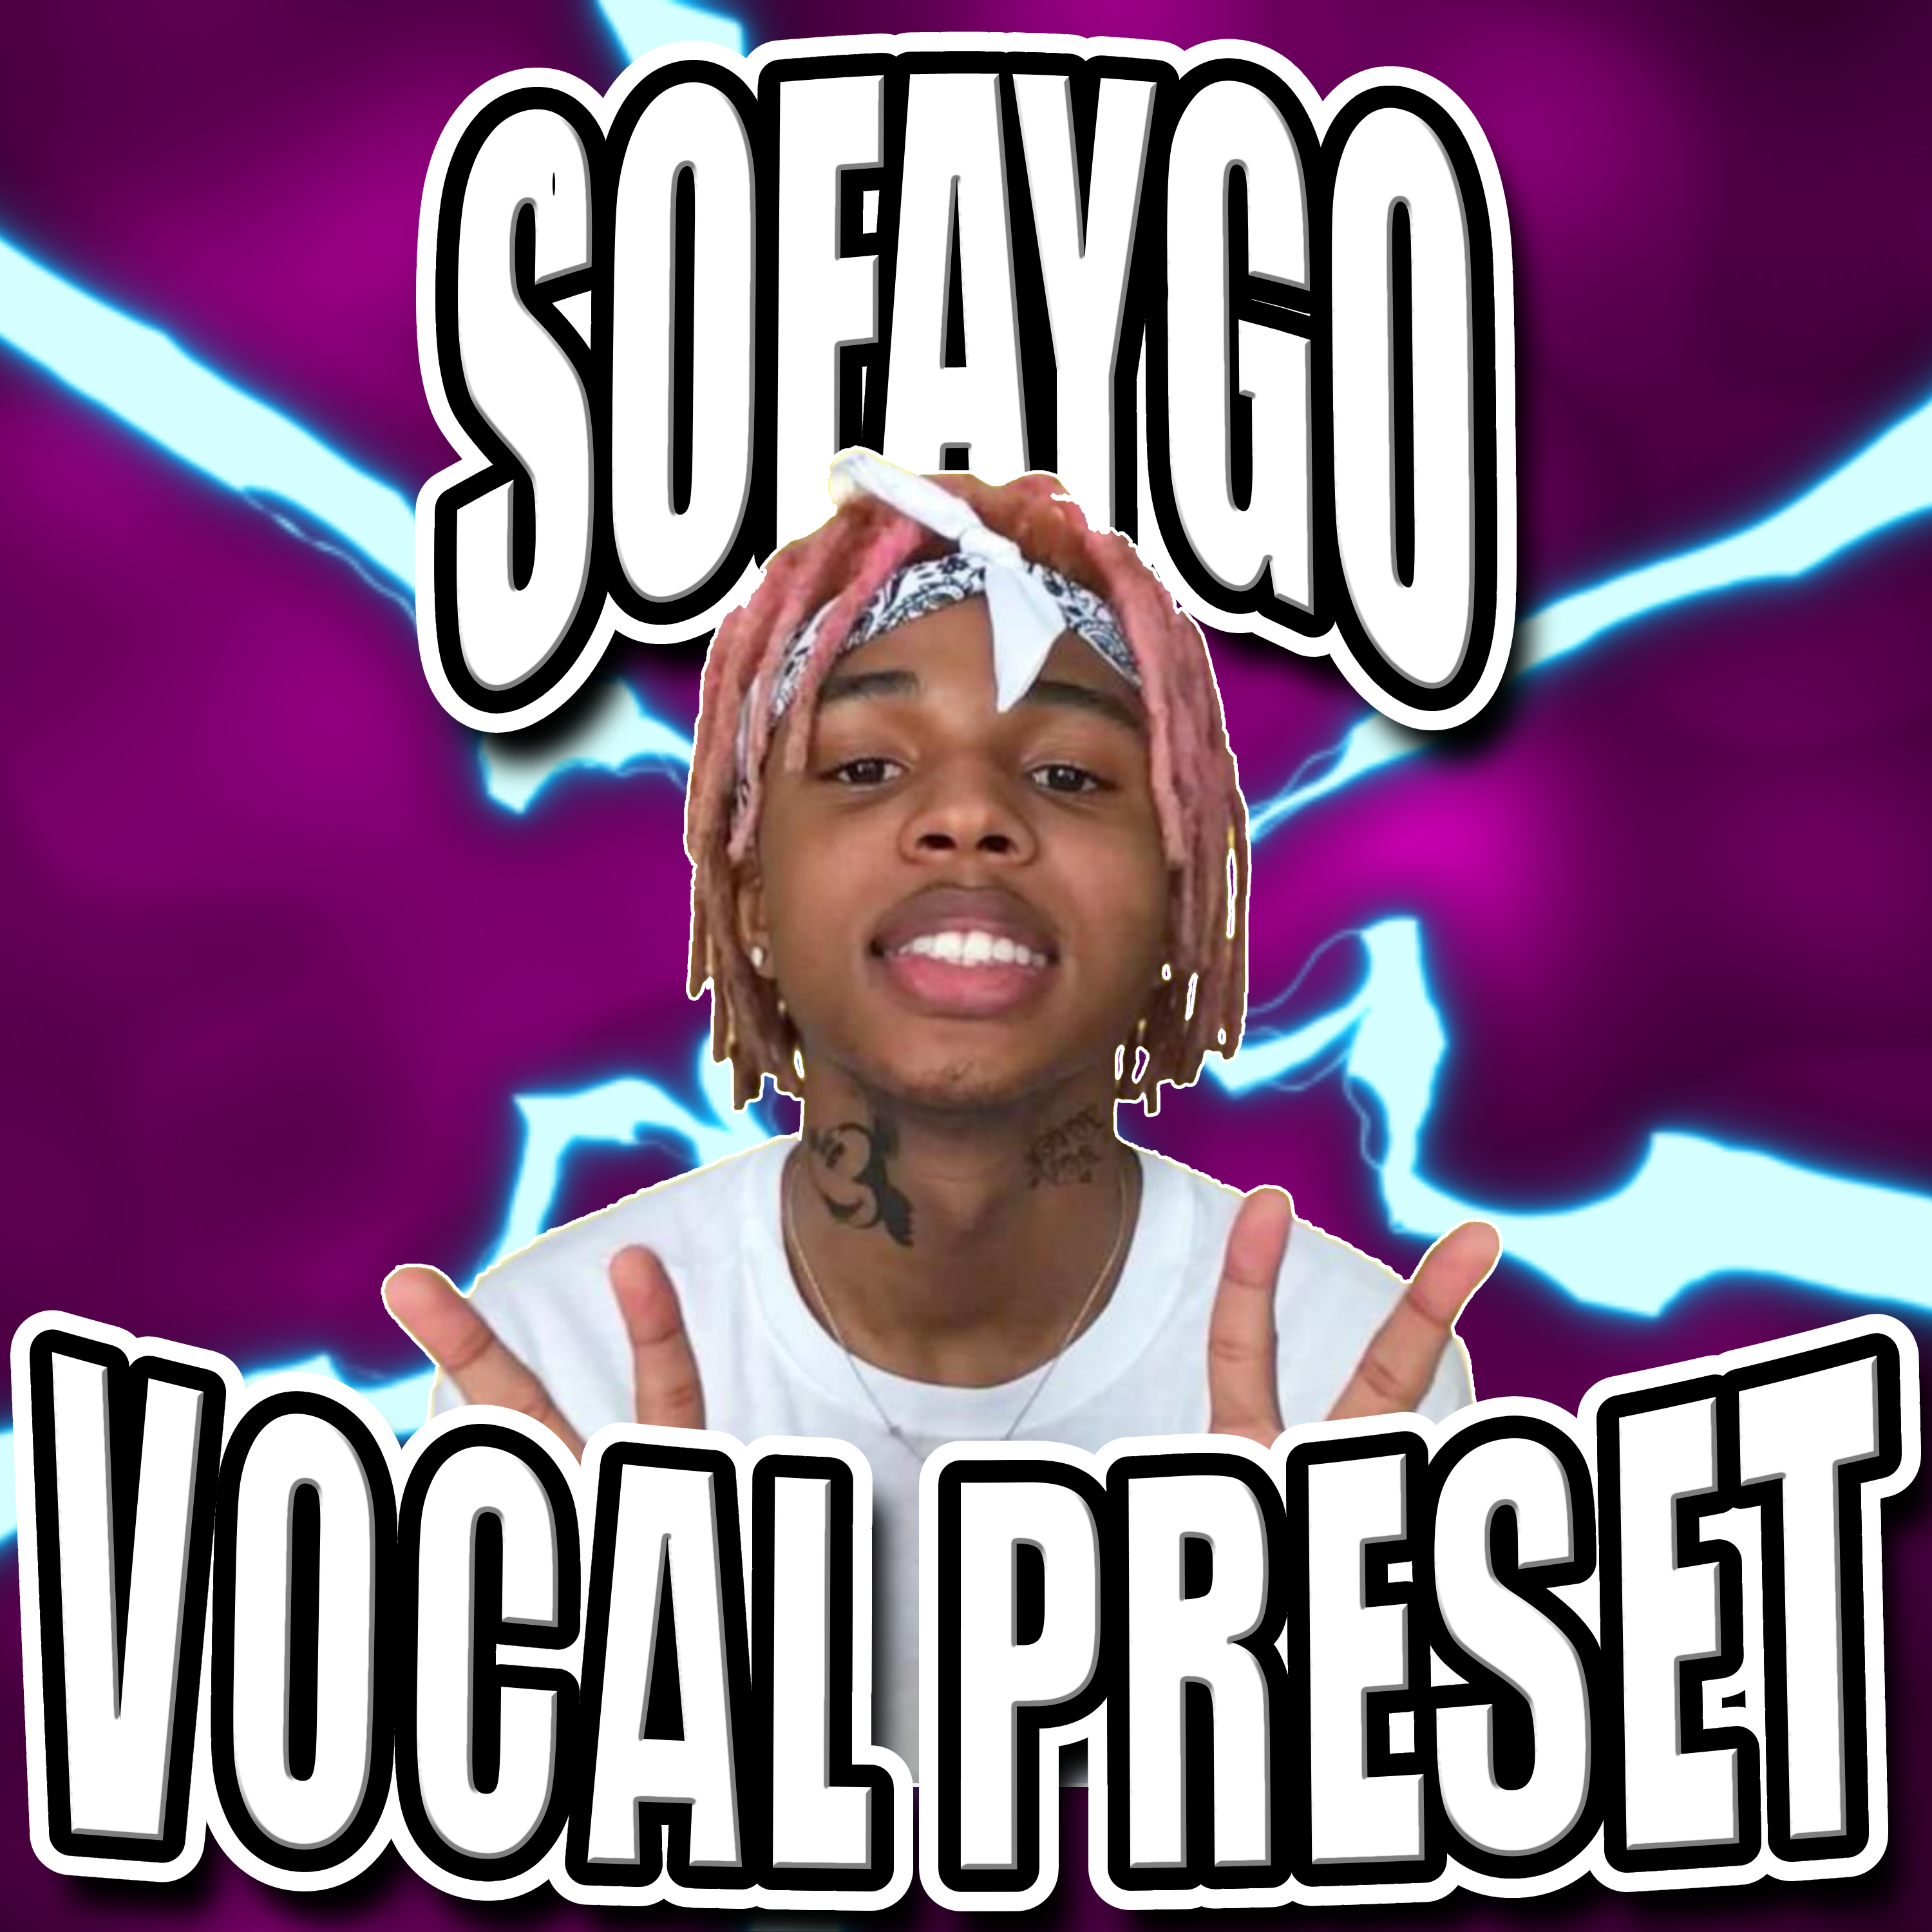 Sofaygo Vocal Preset